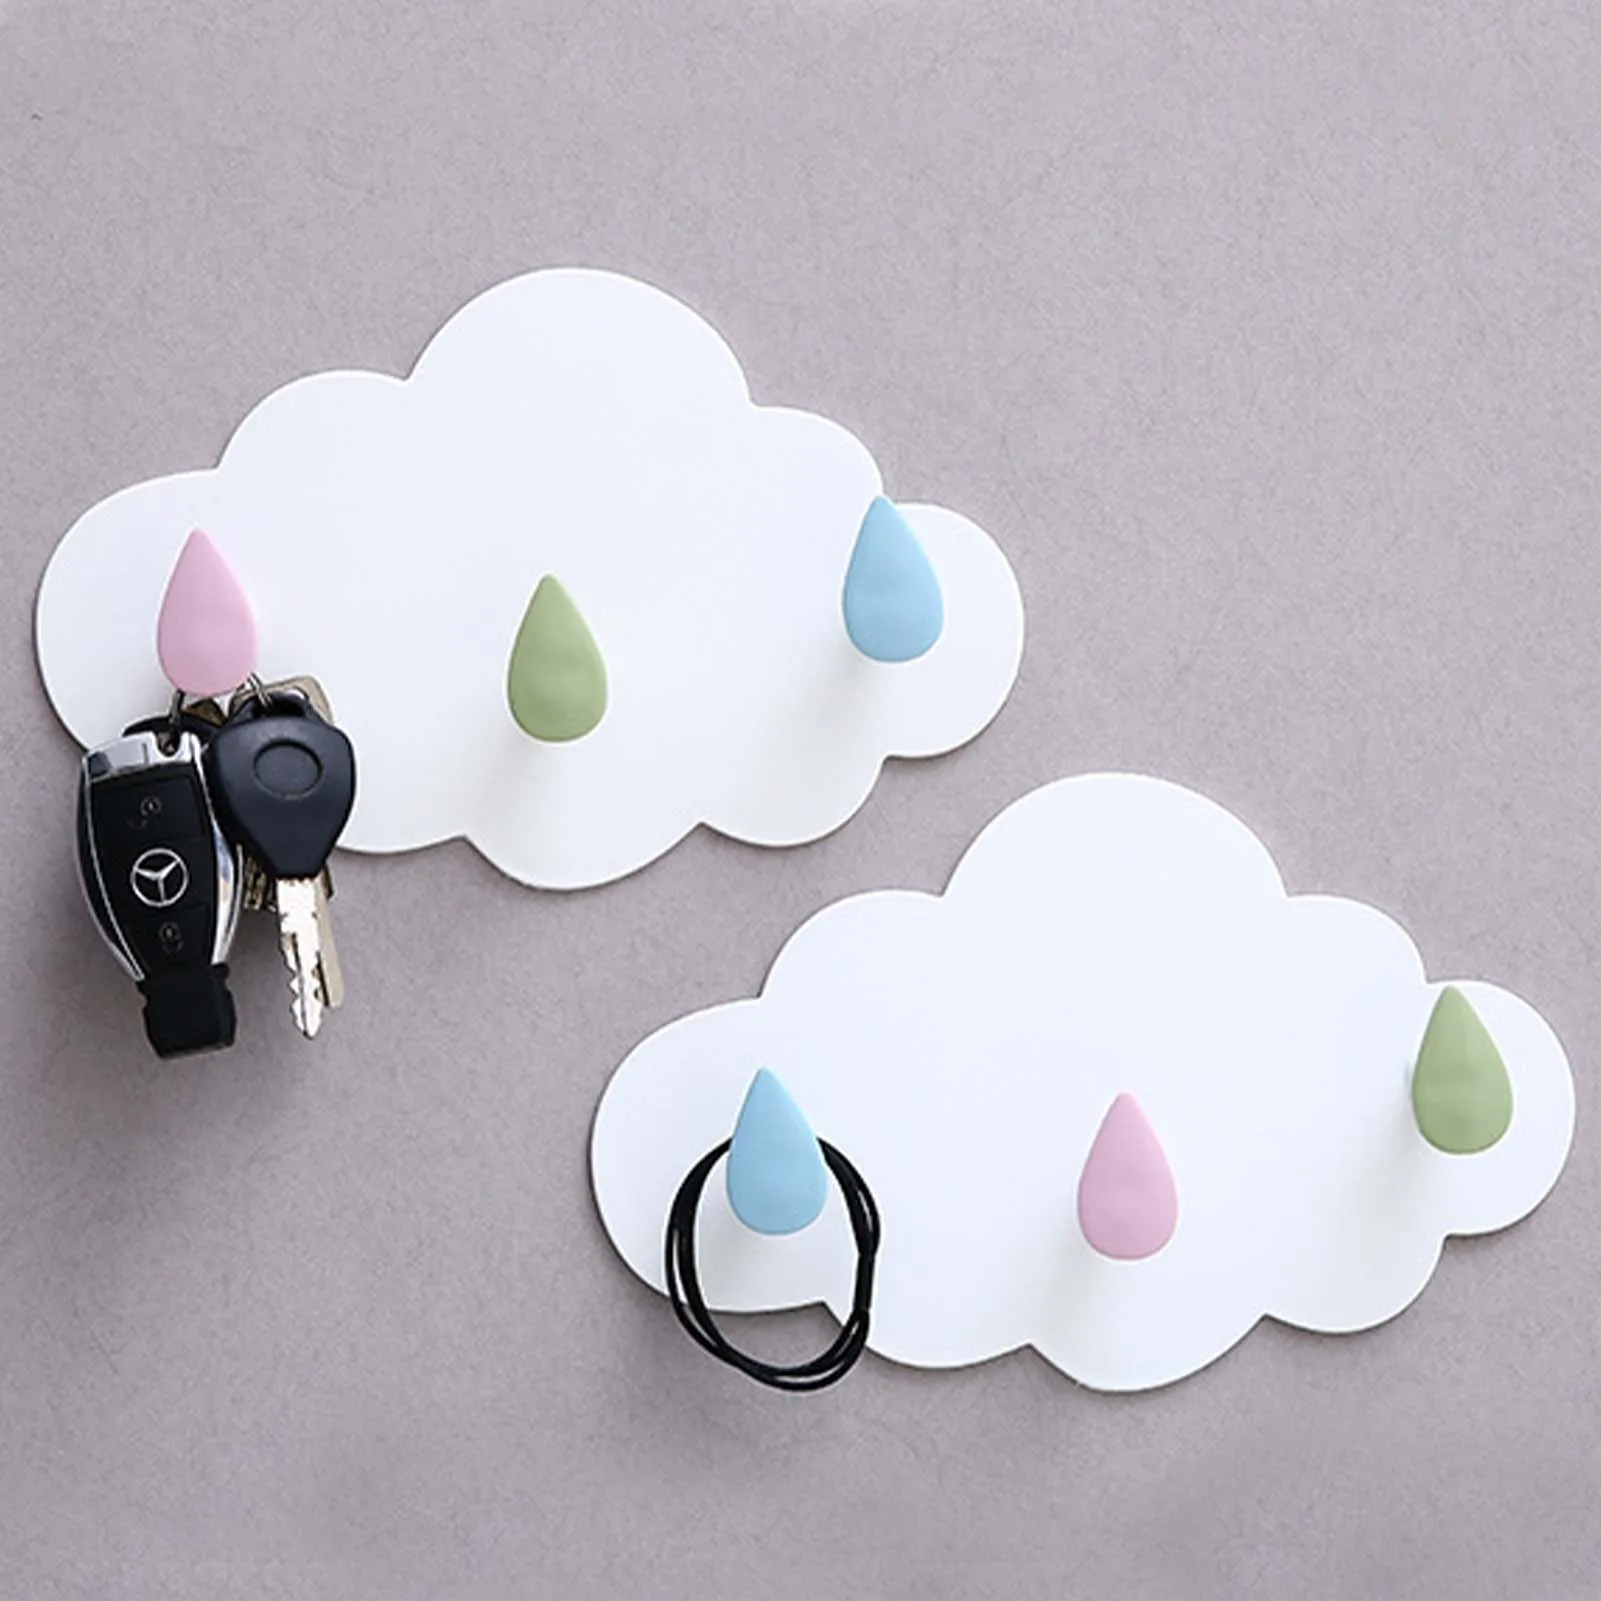 Cloud Shaped Hook Multipurpose Hooks Self Adhesive Home Decorative Hooks Hat Keys Towel Hooks For Kitchen Bathroom Kids Room